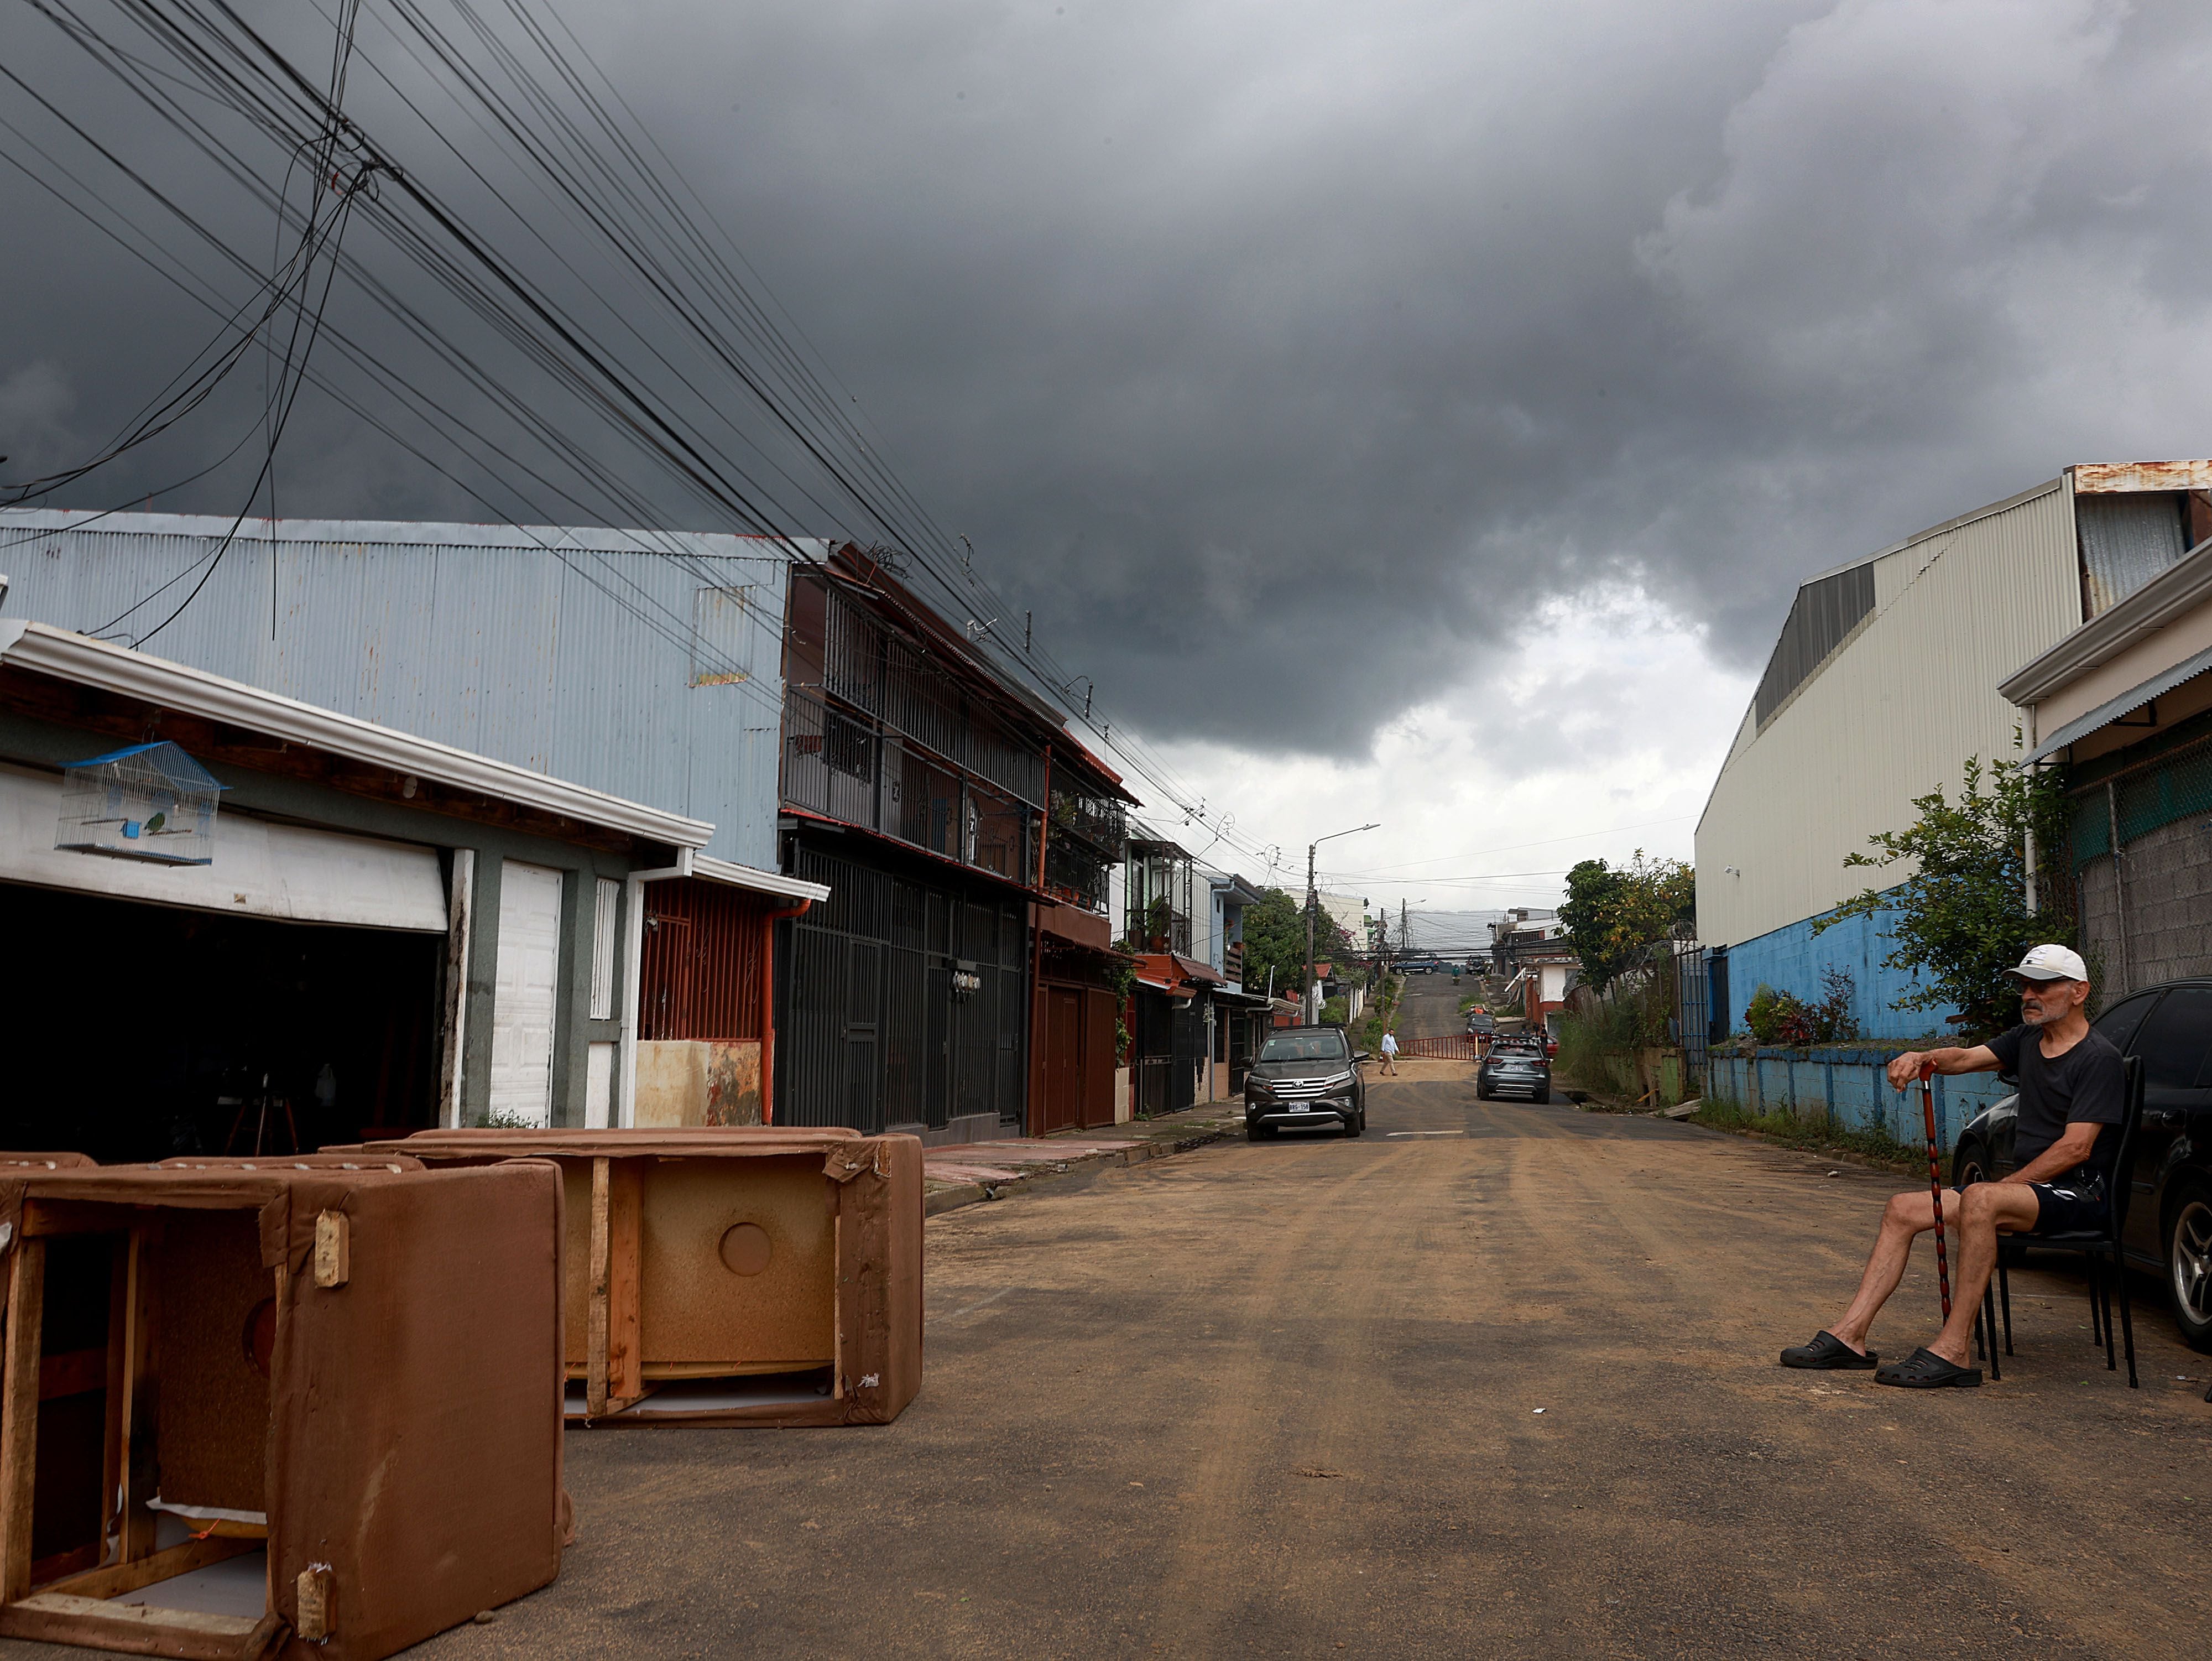 Marco Antonio Guzmán, vecino de Gravilias, sentado en media calle recordó que esa situación la viven año tras año. Al fondo se apreciaba una nube negra que presagiaba más lluvias. Foto: 